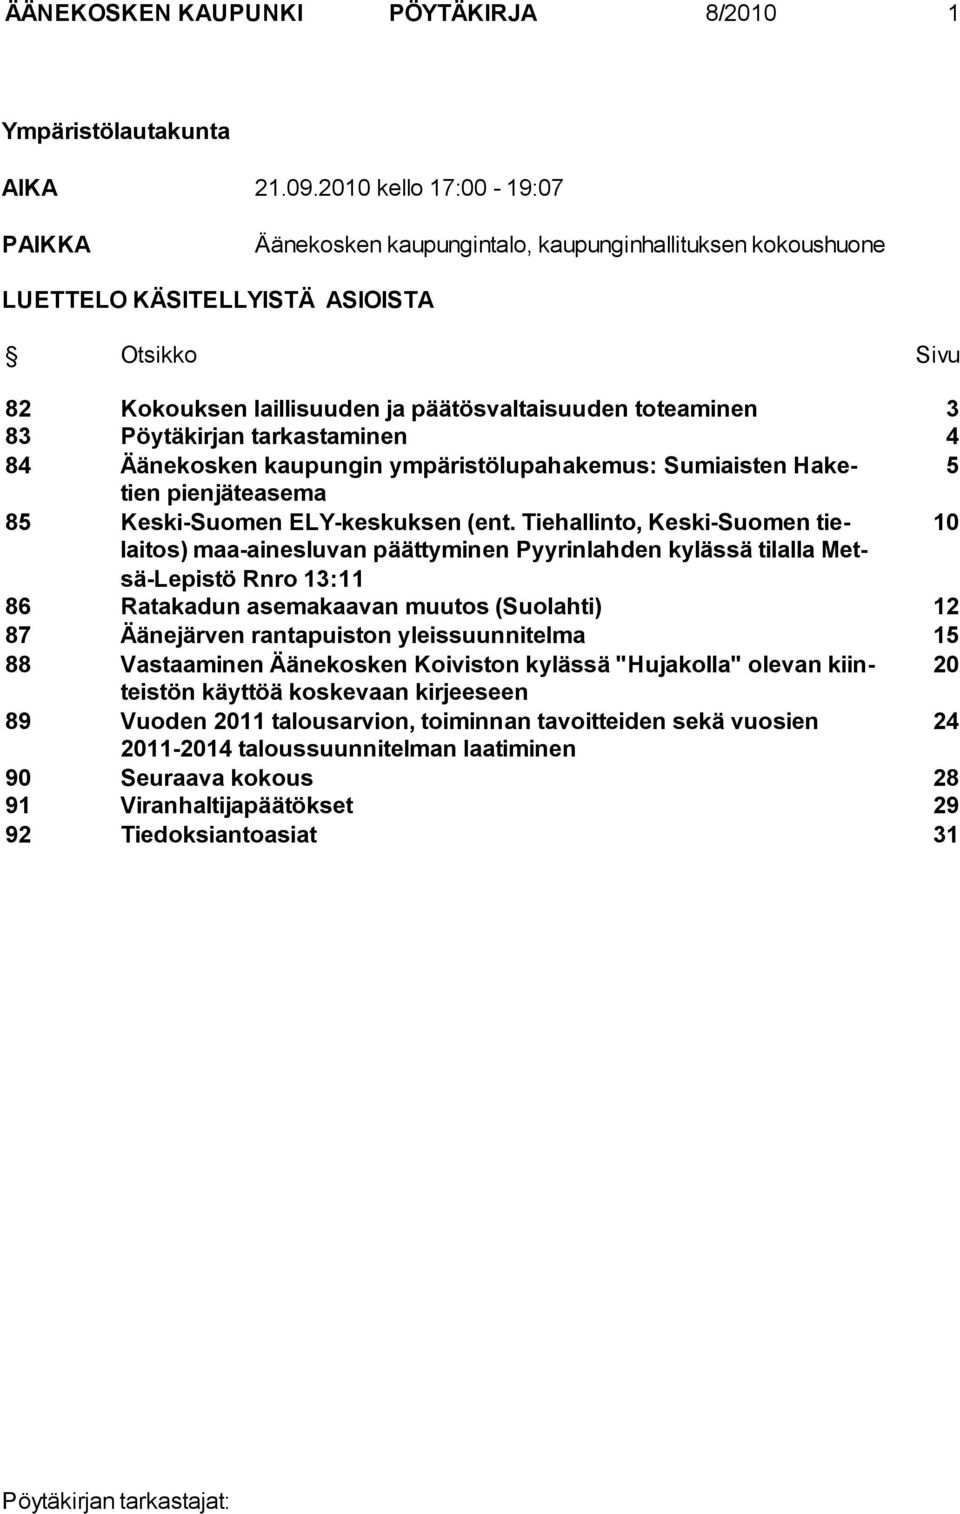 Pöytäkirjan tarkastaminen 4 84 Äänekosken kaupungin ympäristölupahakemus: Sumiaisten Haketien 5 pienjäteasema 85 Keski-Suomen ELY-keskuksen (ent.